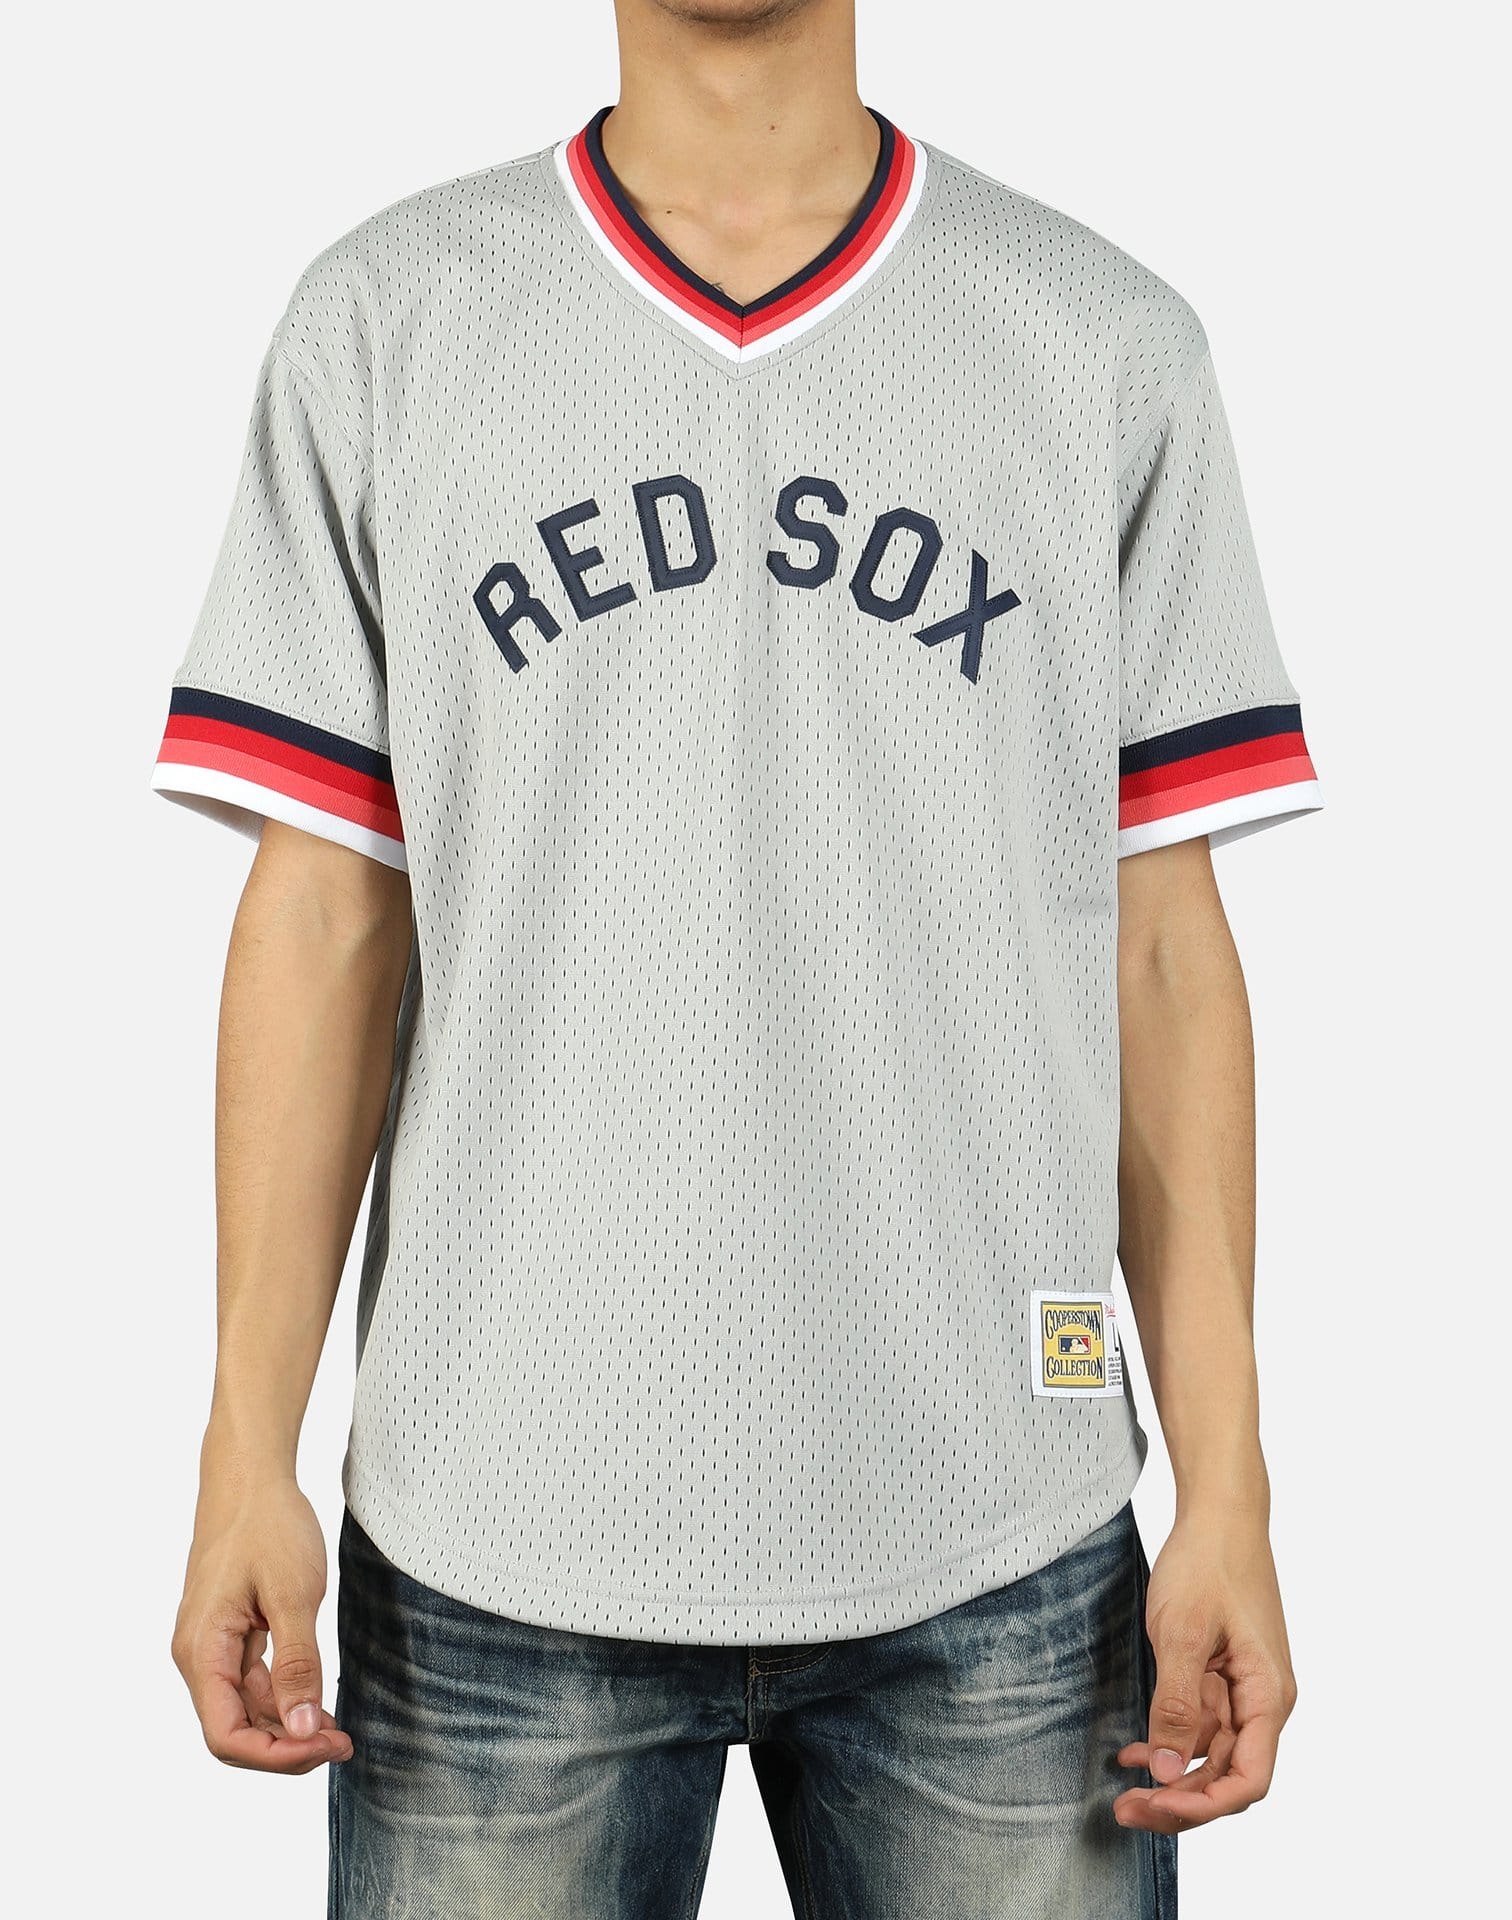 Mitchell & Ness MLB BOSTON RED SOX MESH V- NECK JERSEY